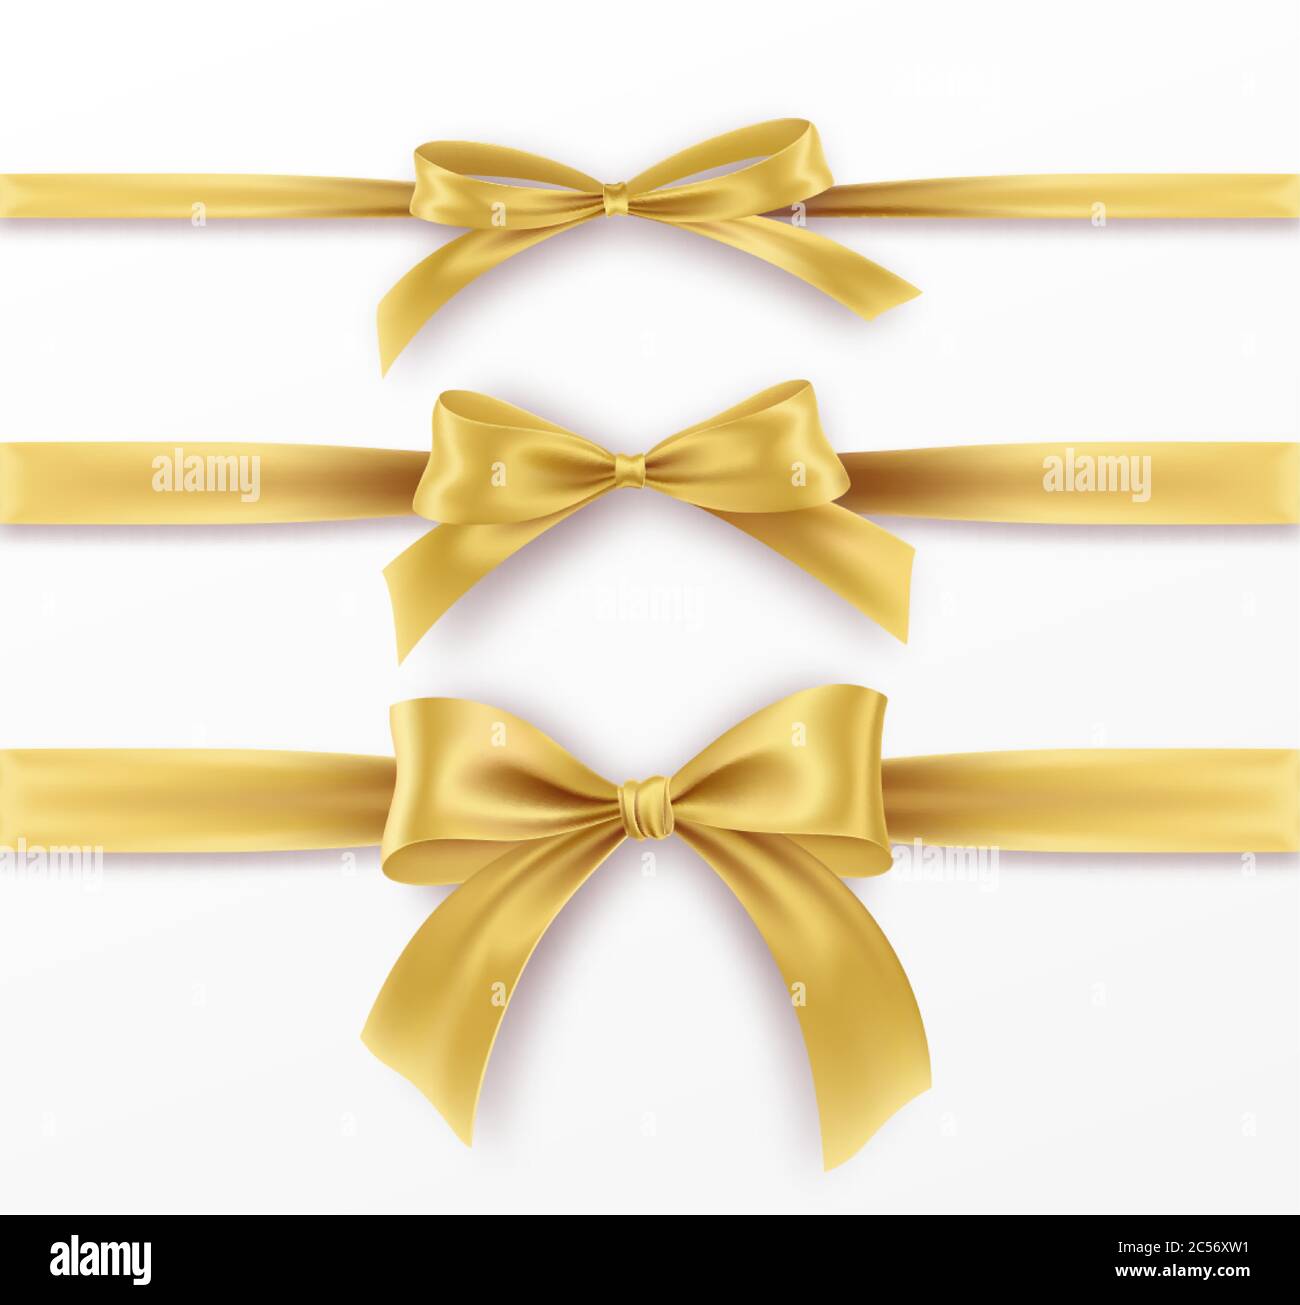 Setzen Sie goldene Schleife und Band auf weißem Hintergrund. Realistische Goldschleife für Dekorationsdesign Feiertagsrahmen, Bordüre. Vektorgrafik Stock Vektor